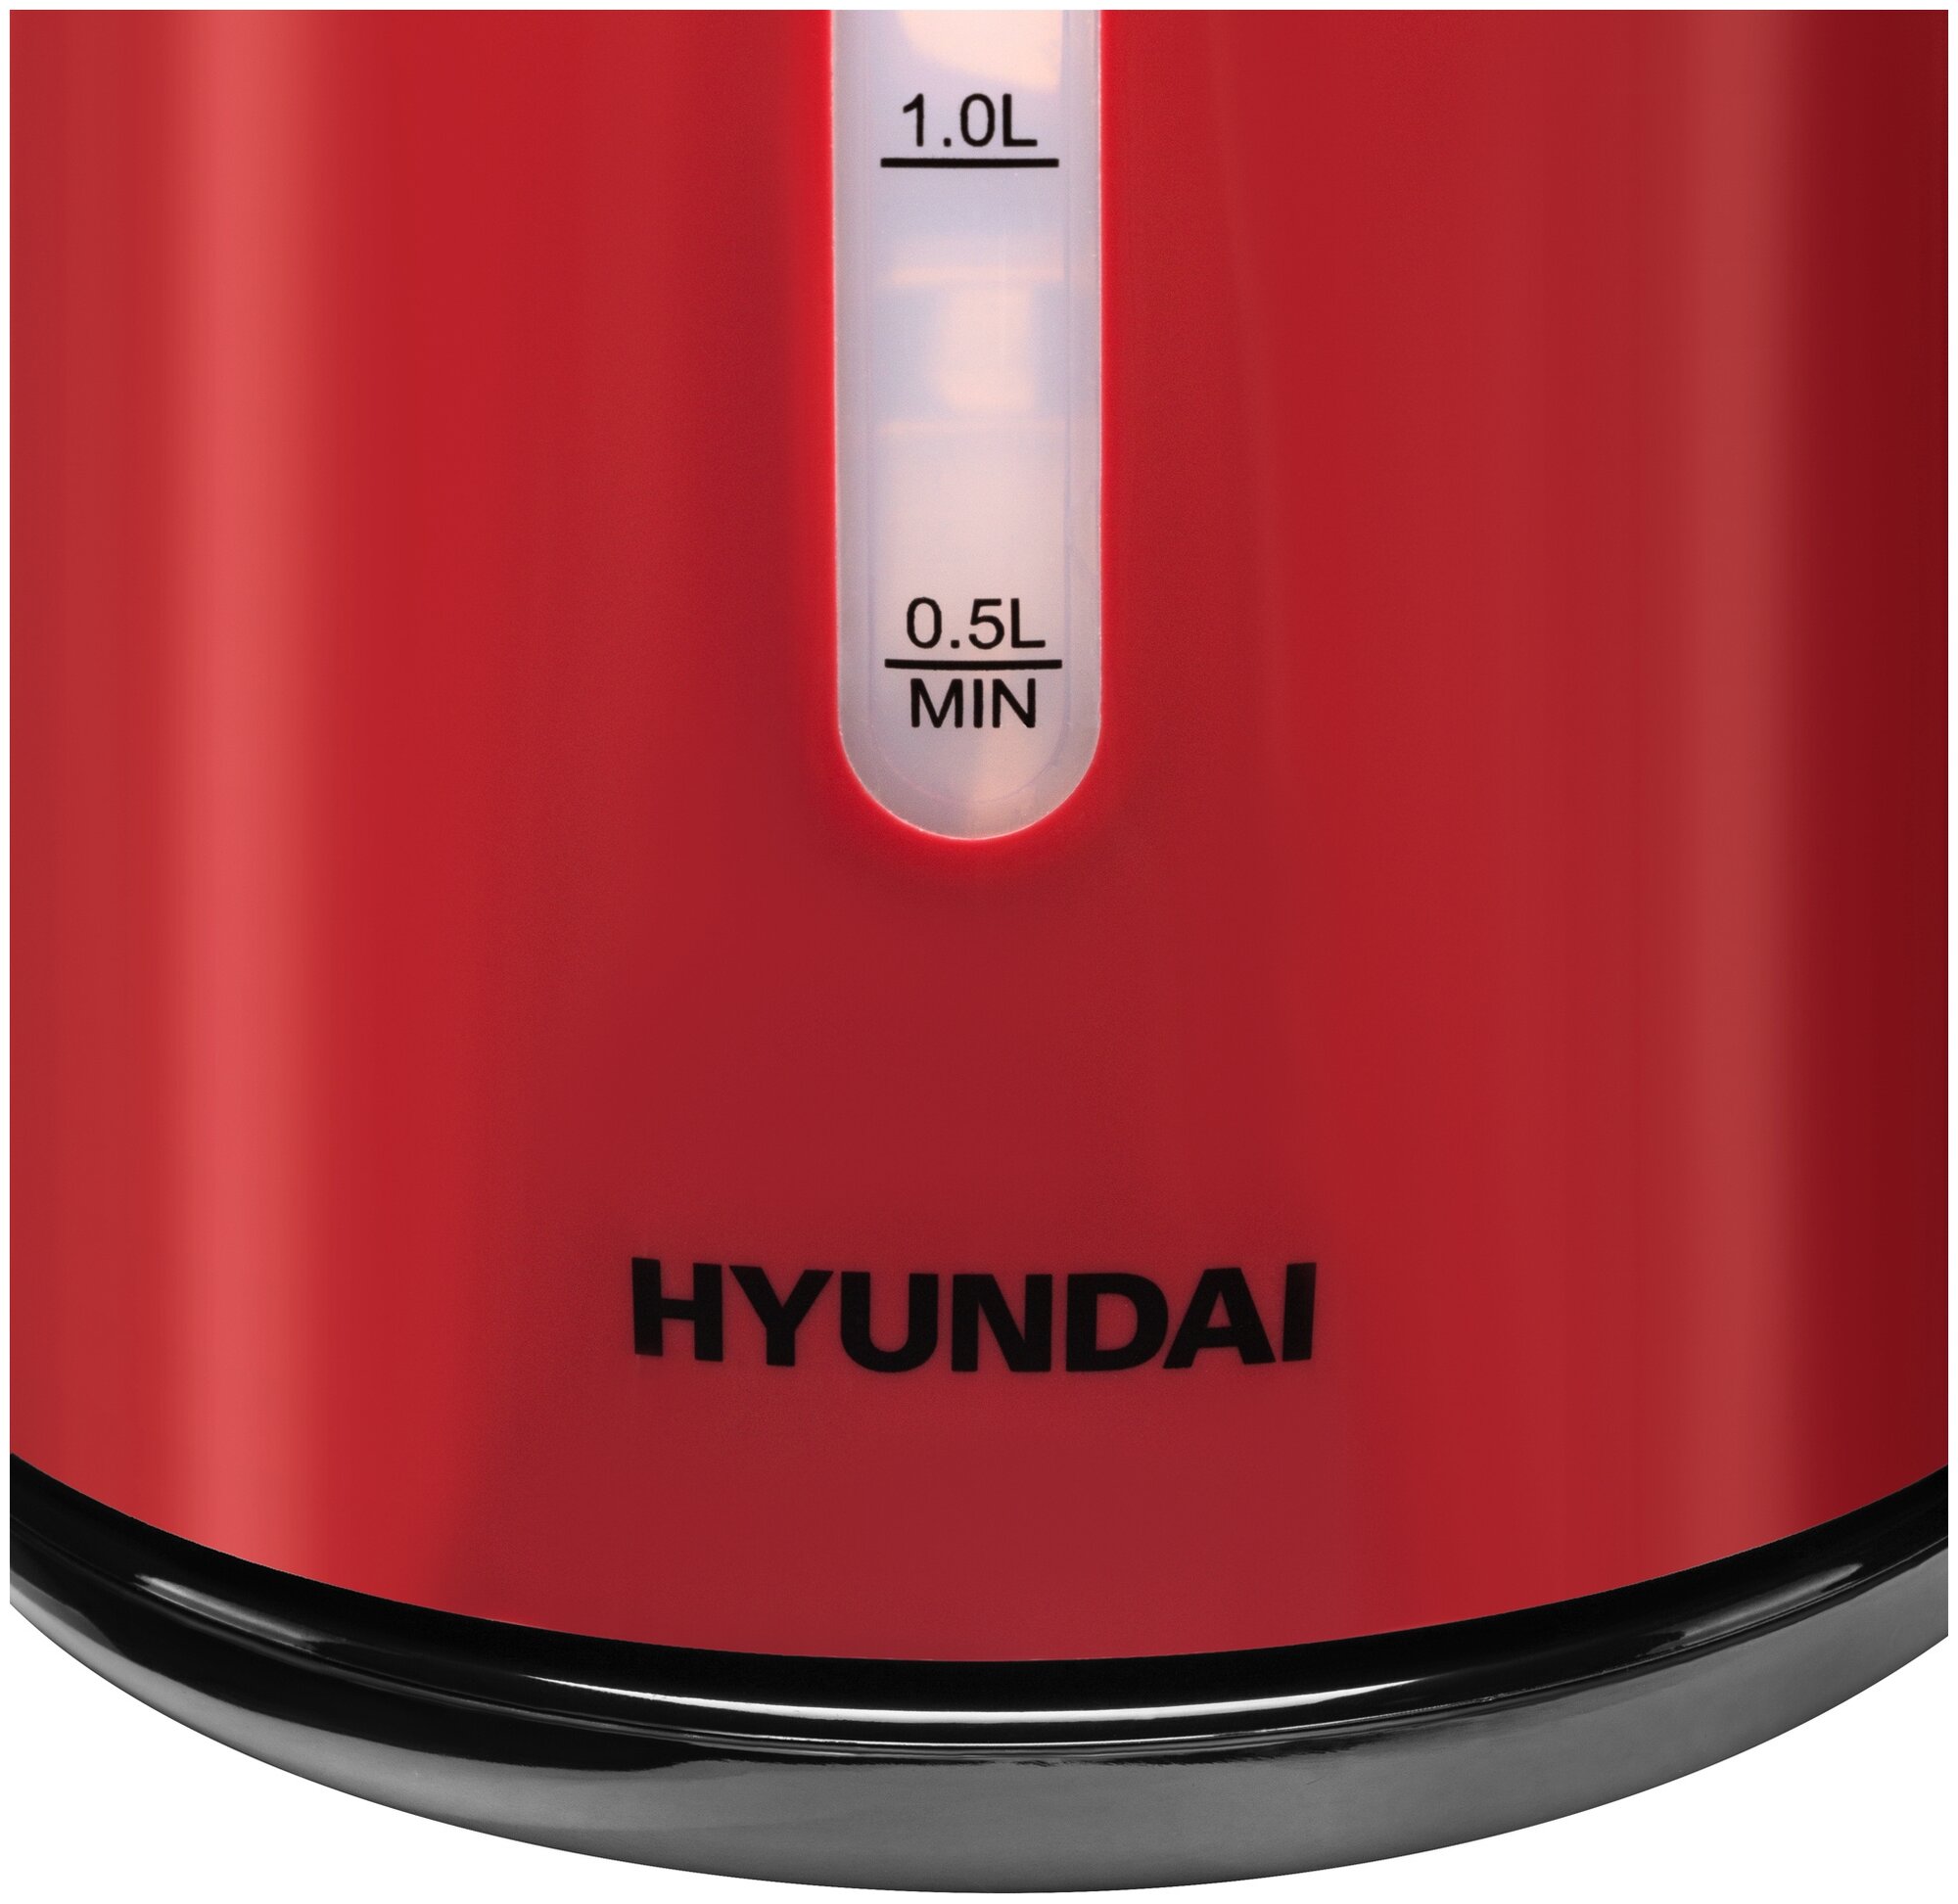 Чайник Hyundai HYK-P3024 1.7L